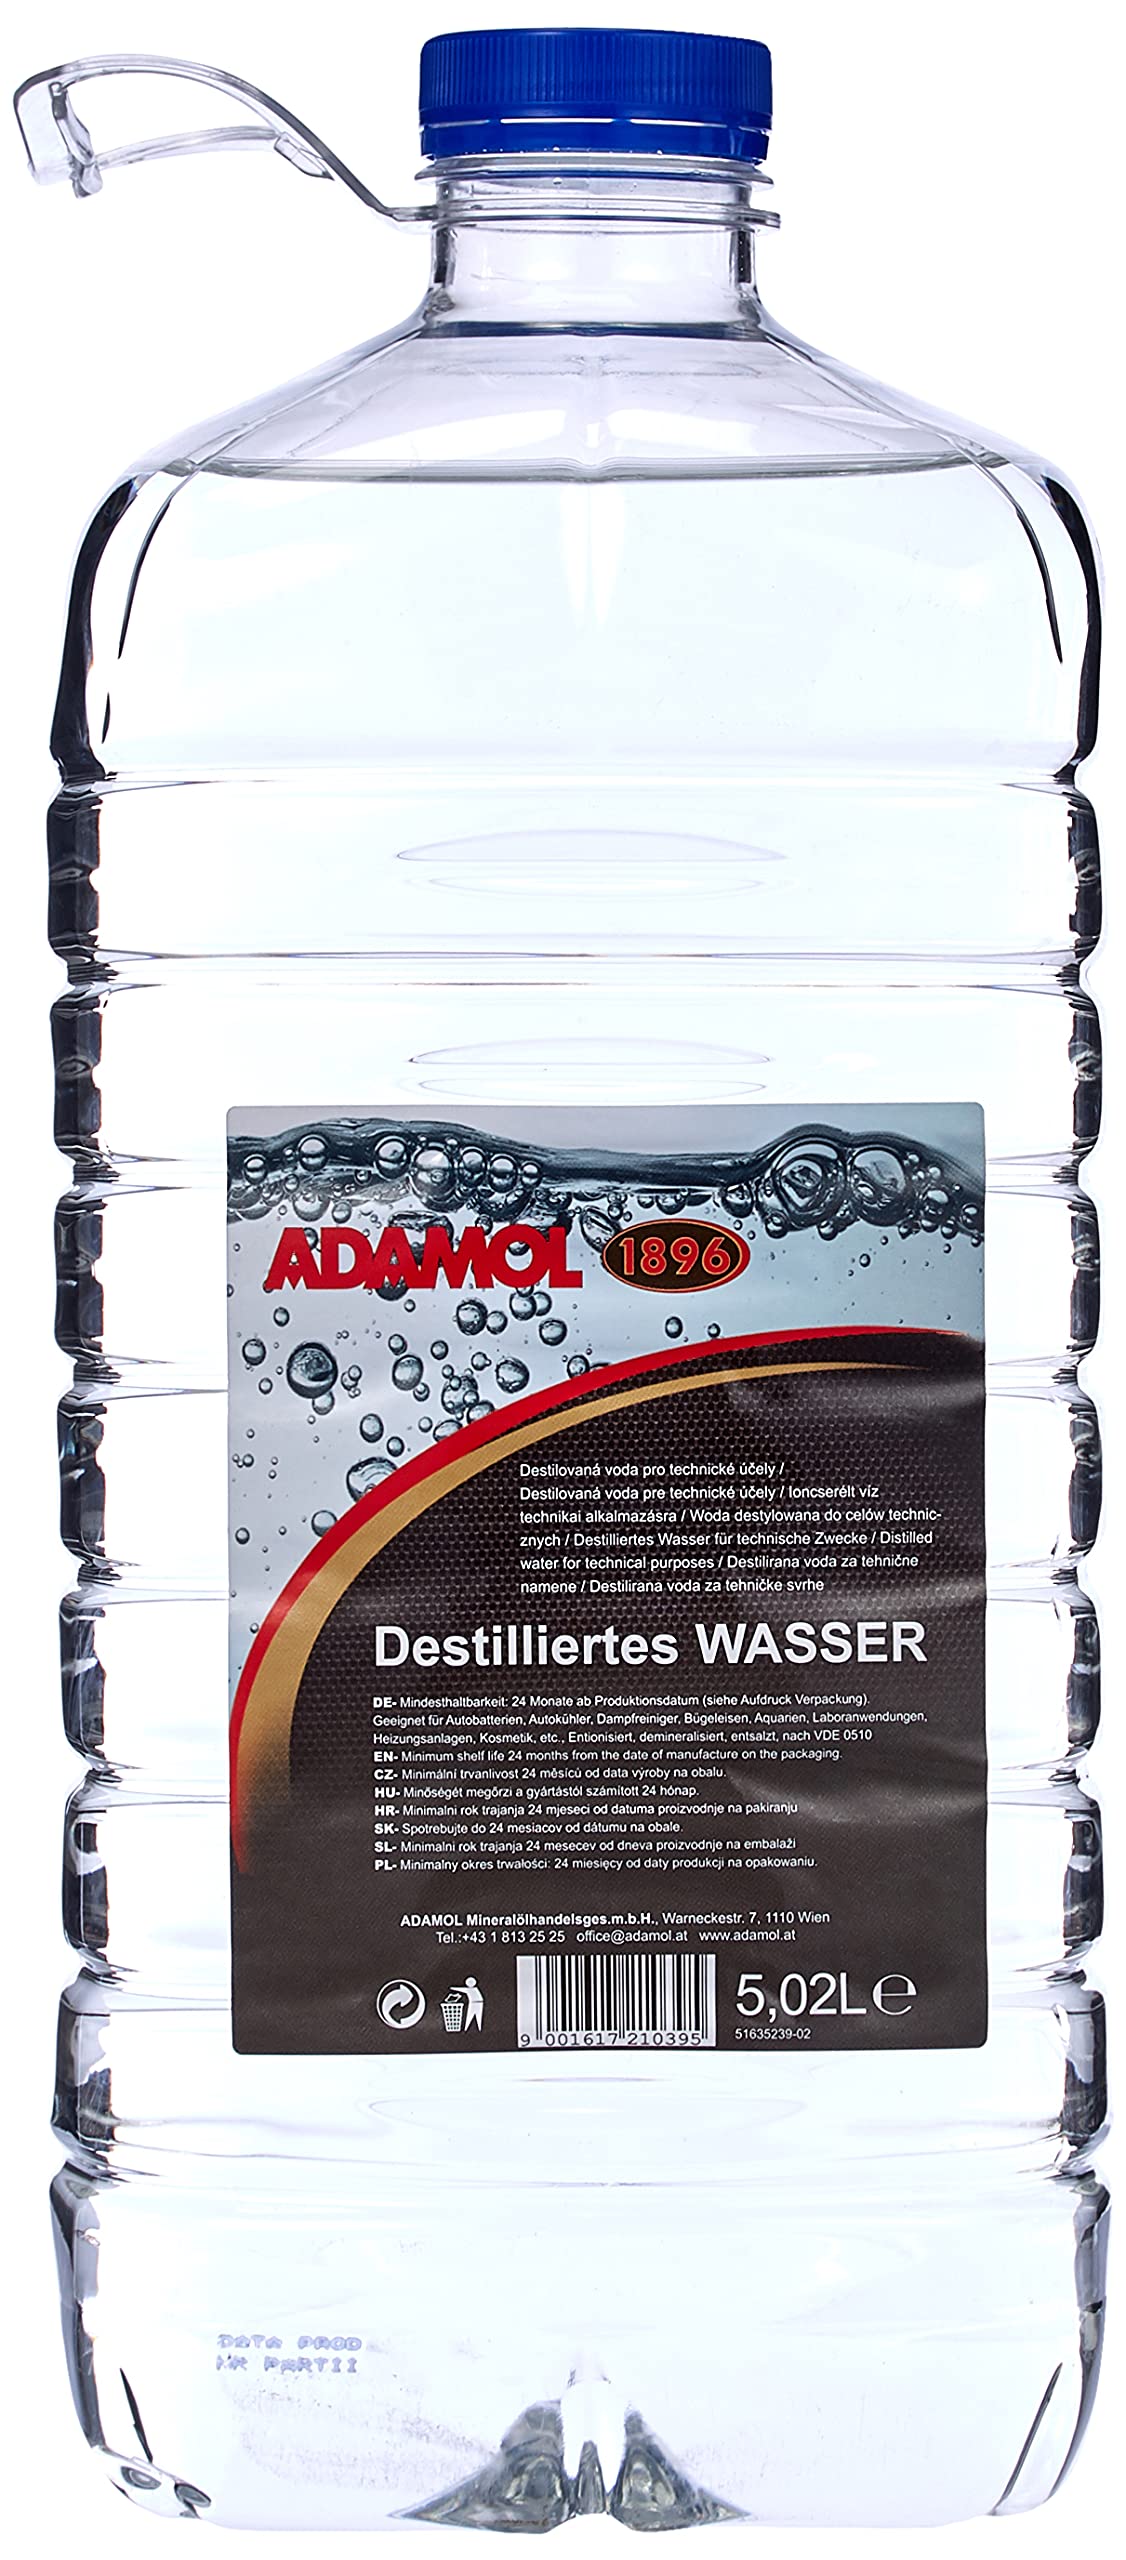 ADAMOL 1896 Destilliertes Wasser 5,02 Liter von ADAMOL 1896